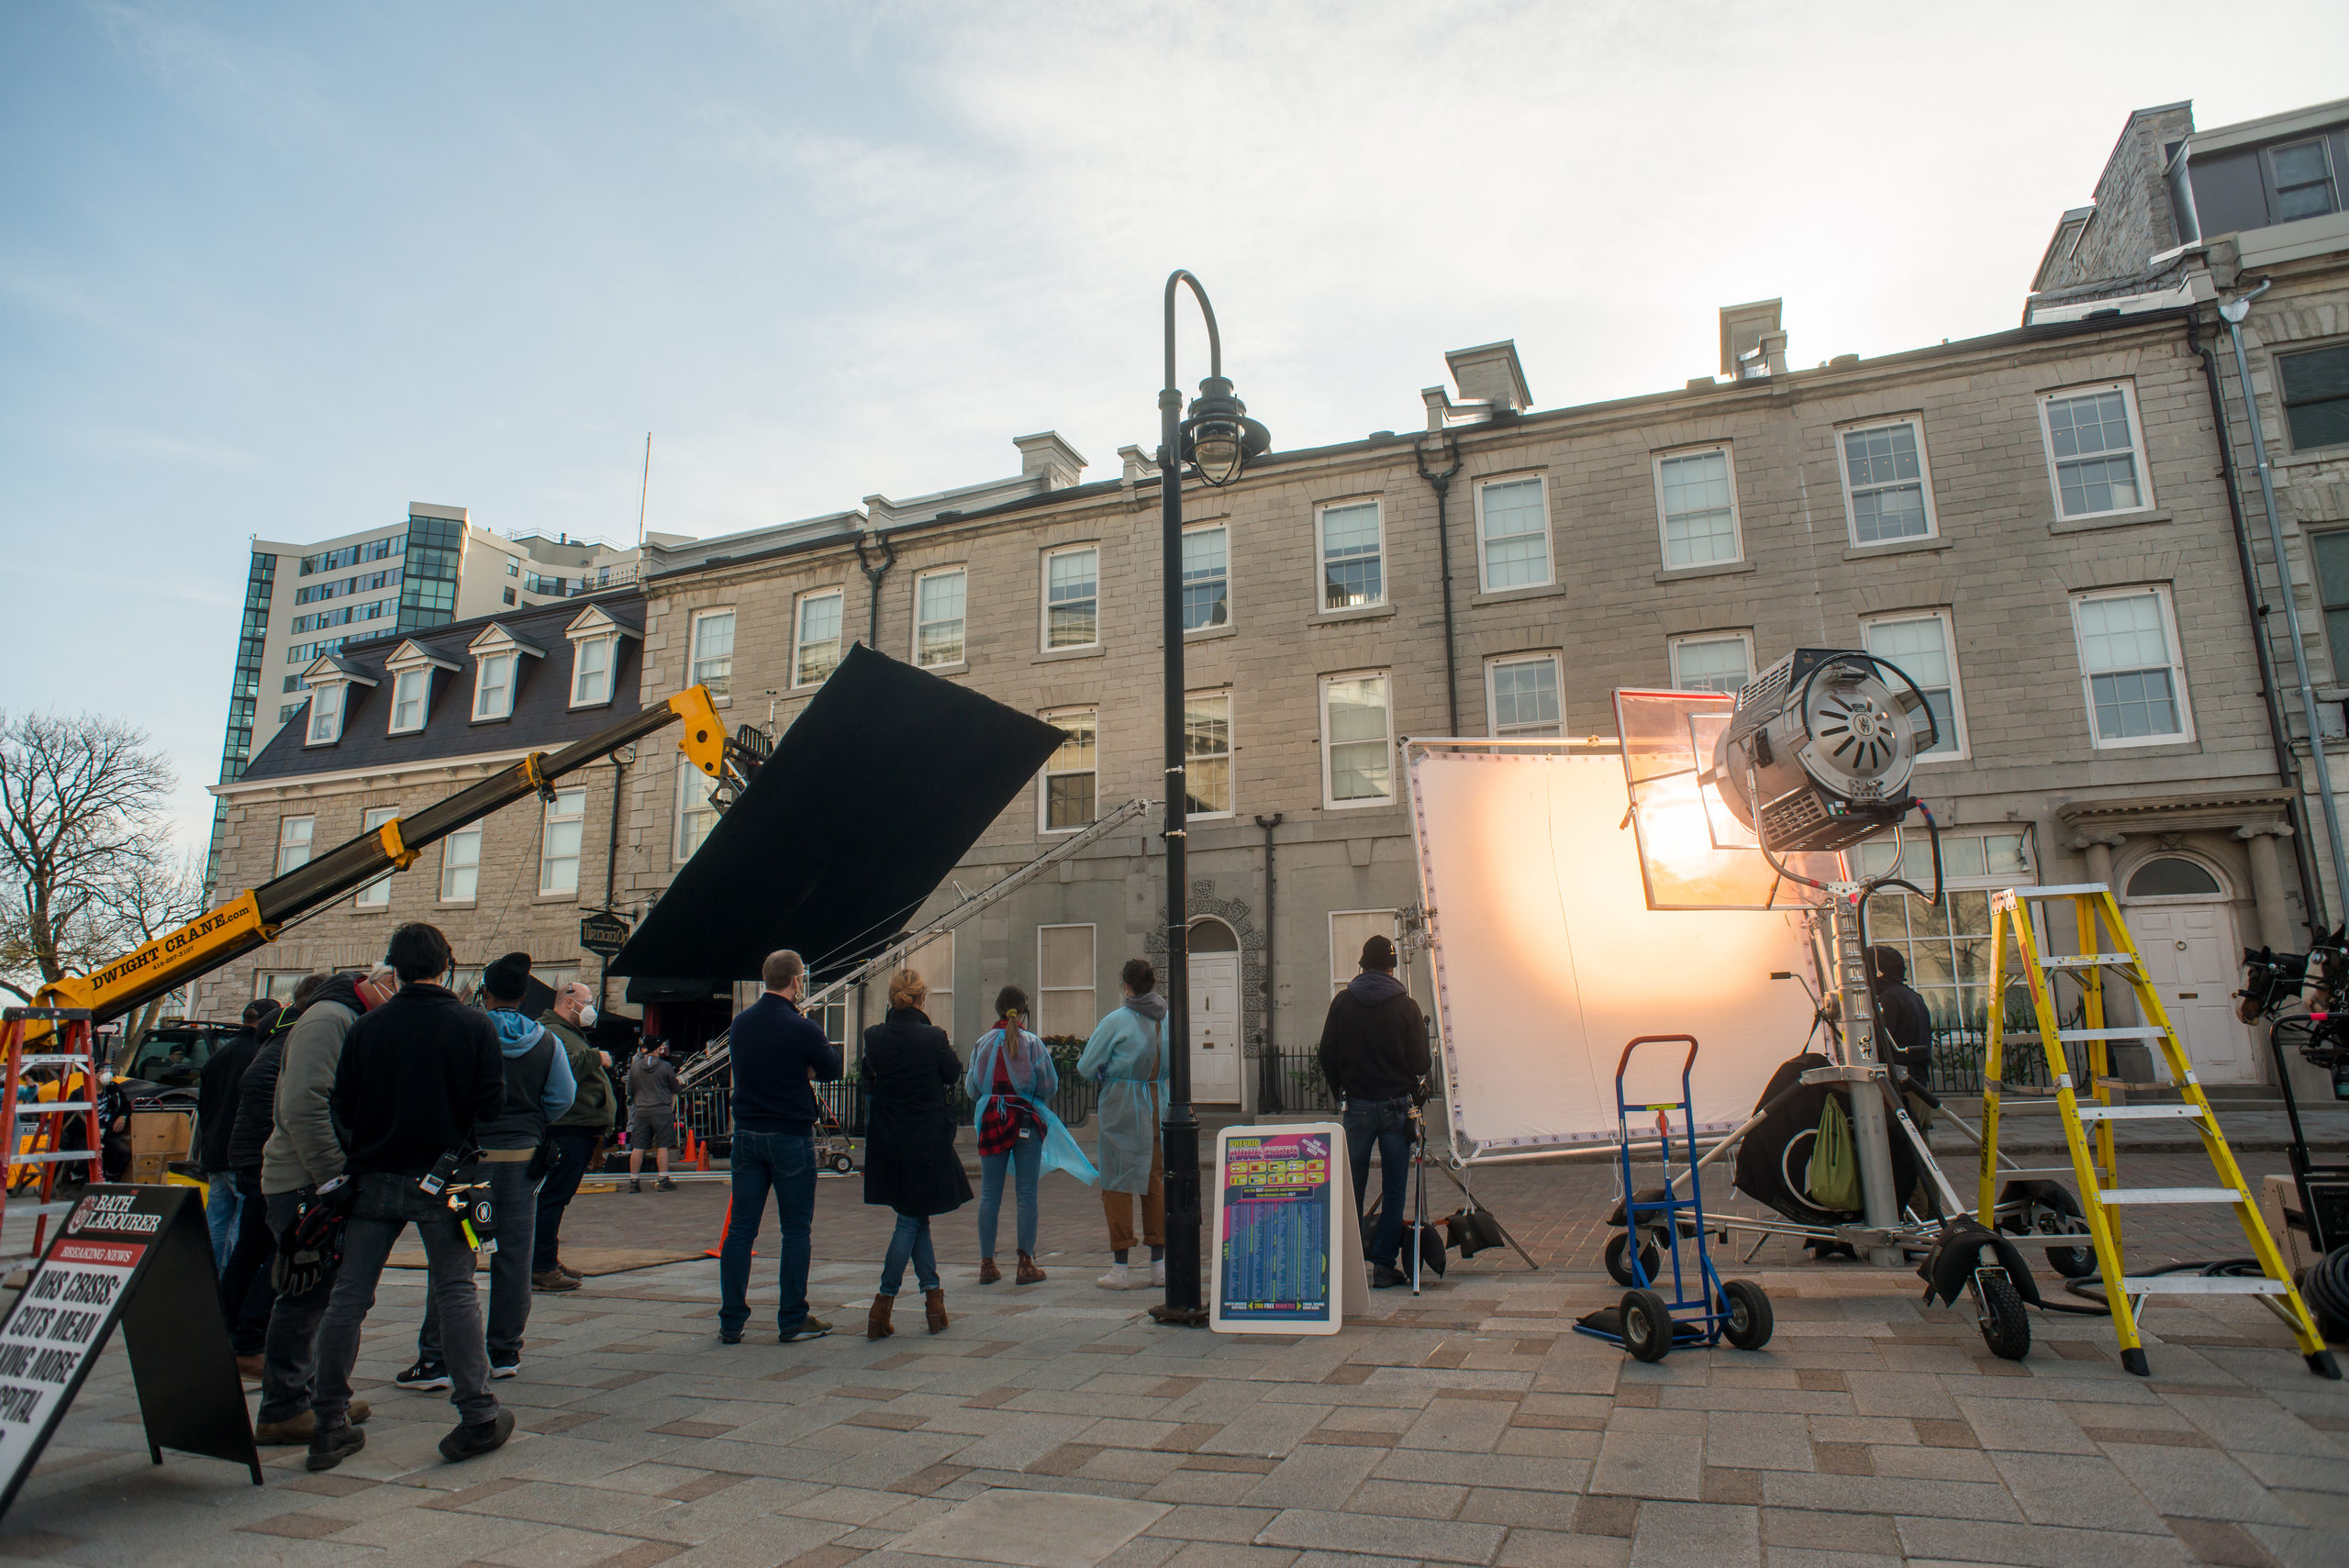 Locke & Key filming in Springer Market Square